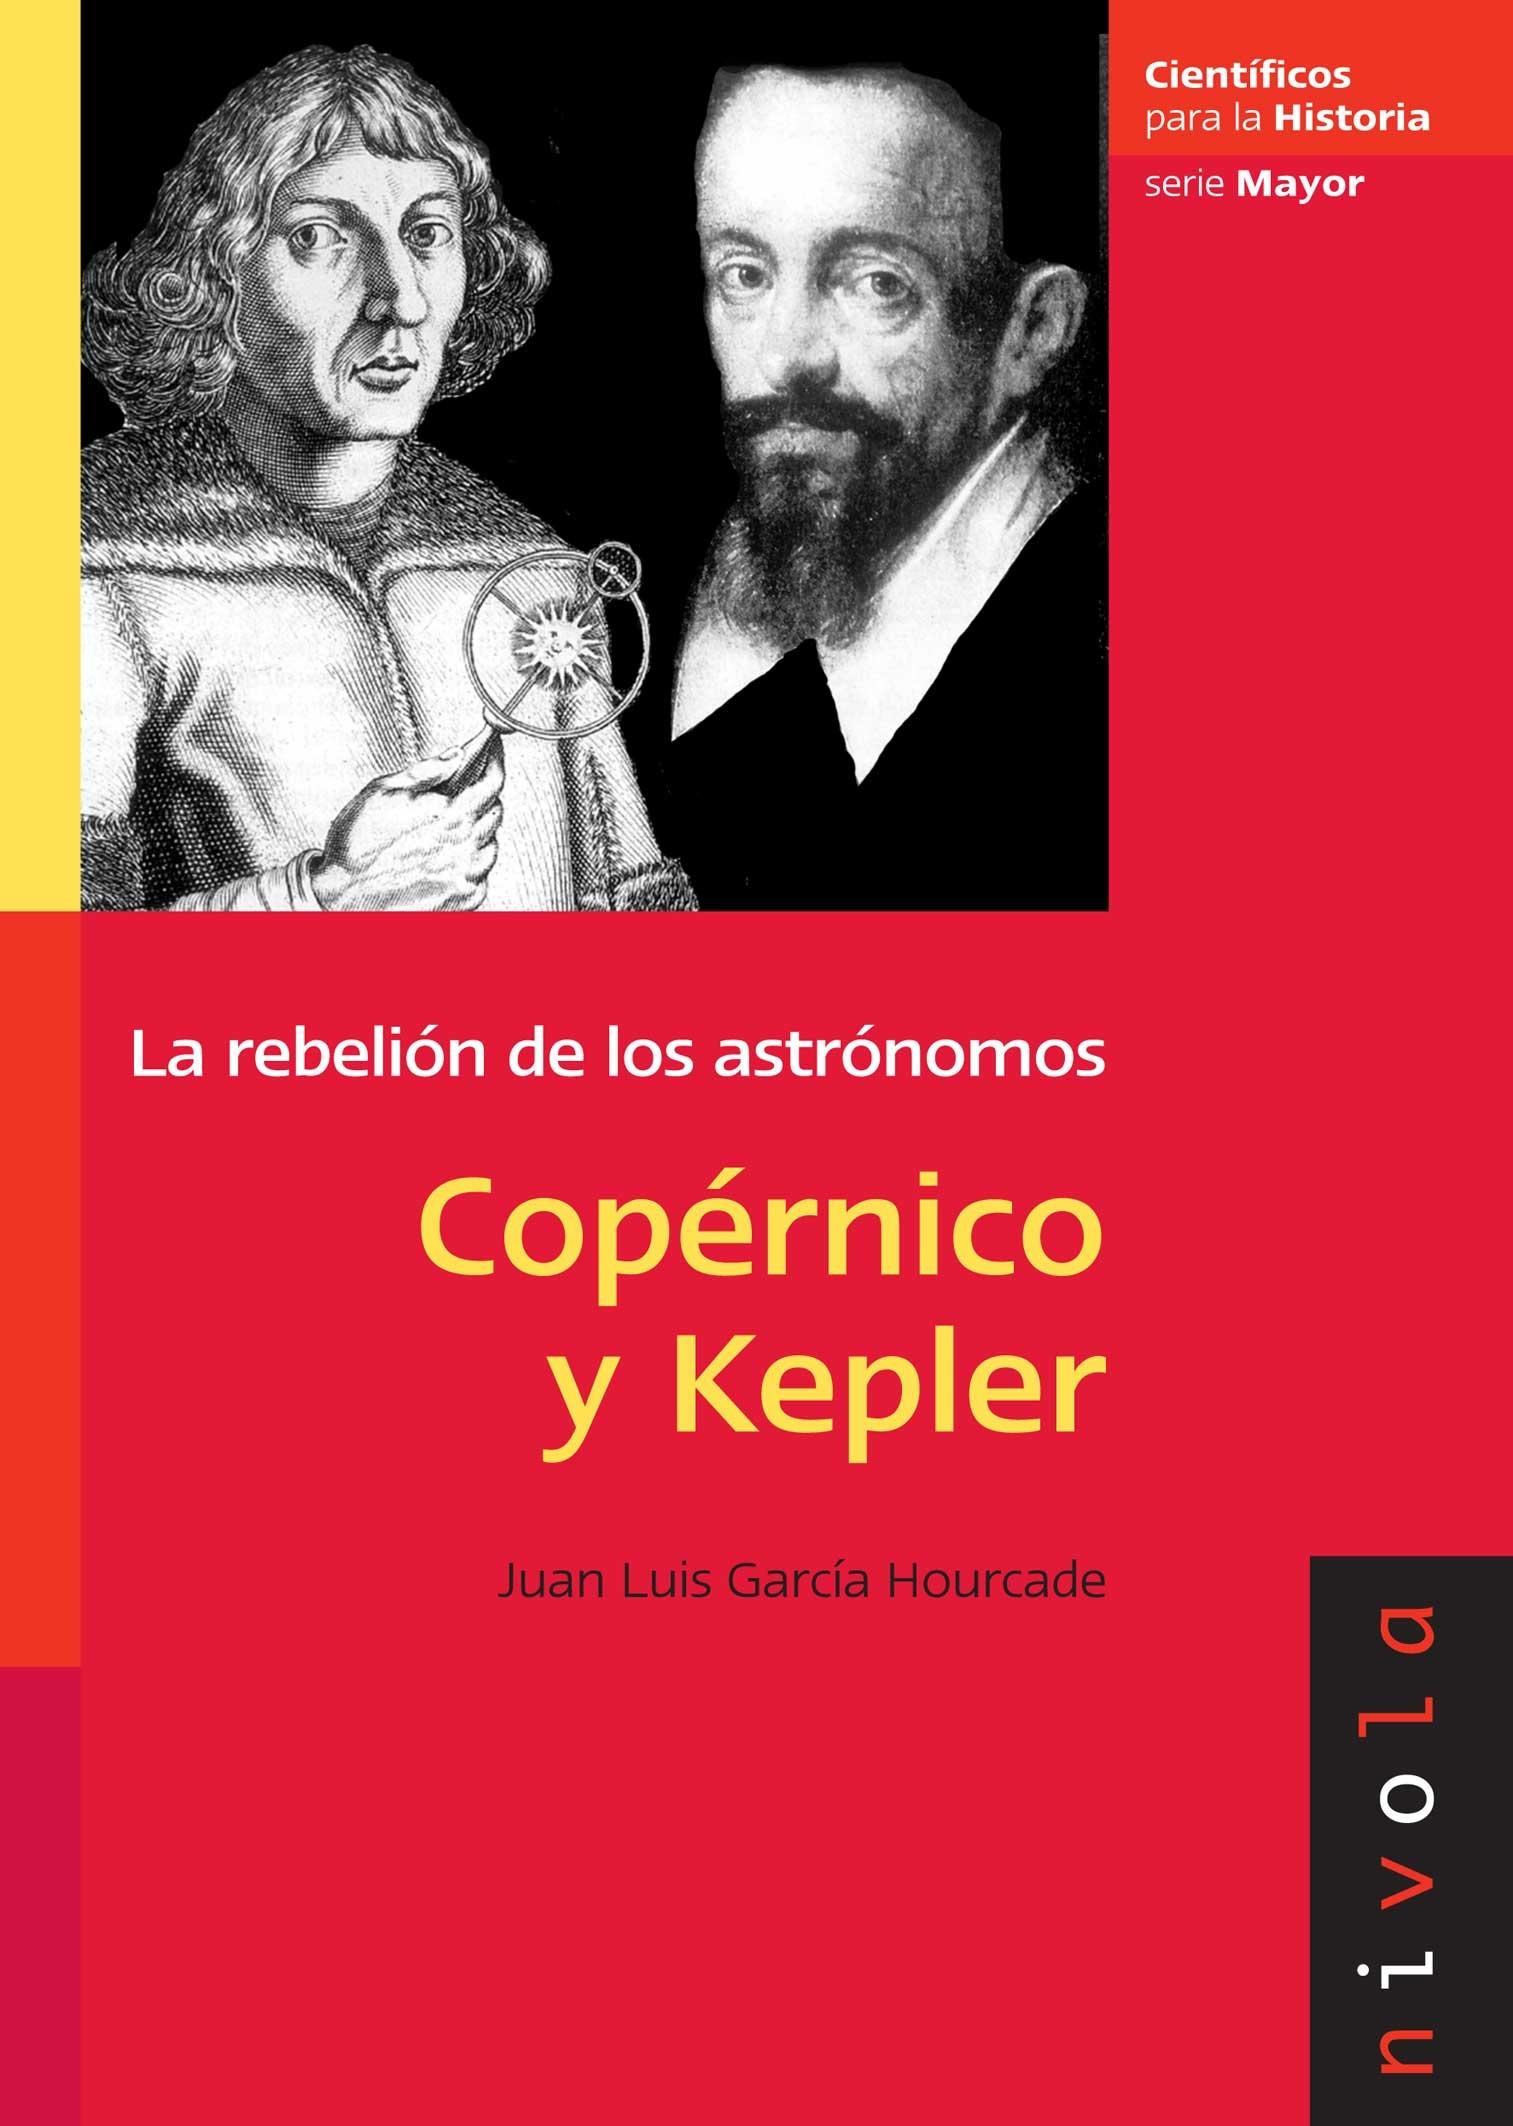 Copérnico y Kepler "La rebelión de los astrónomos"